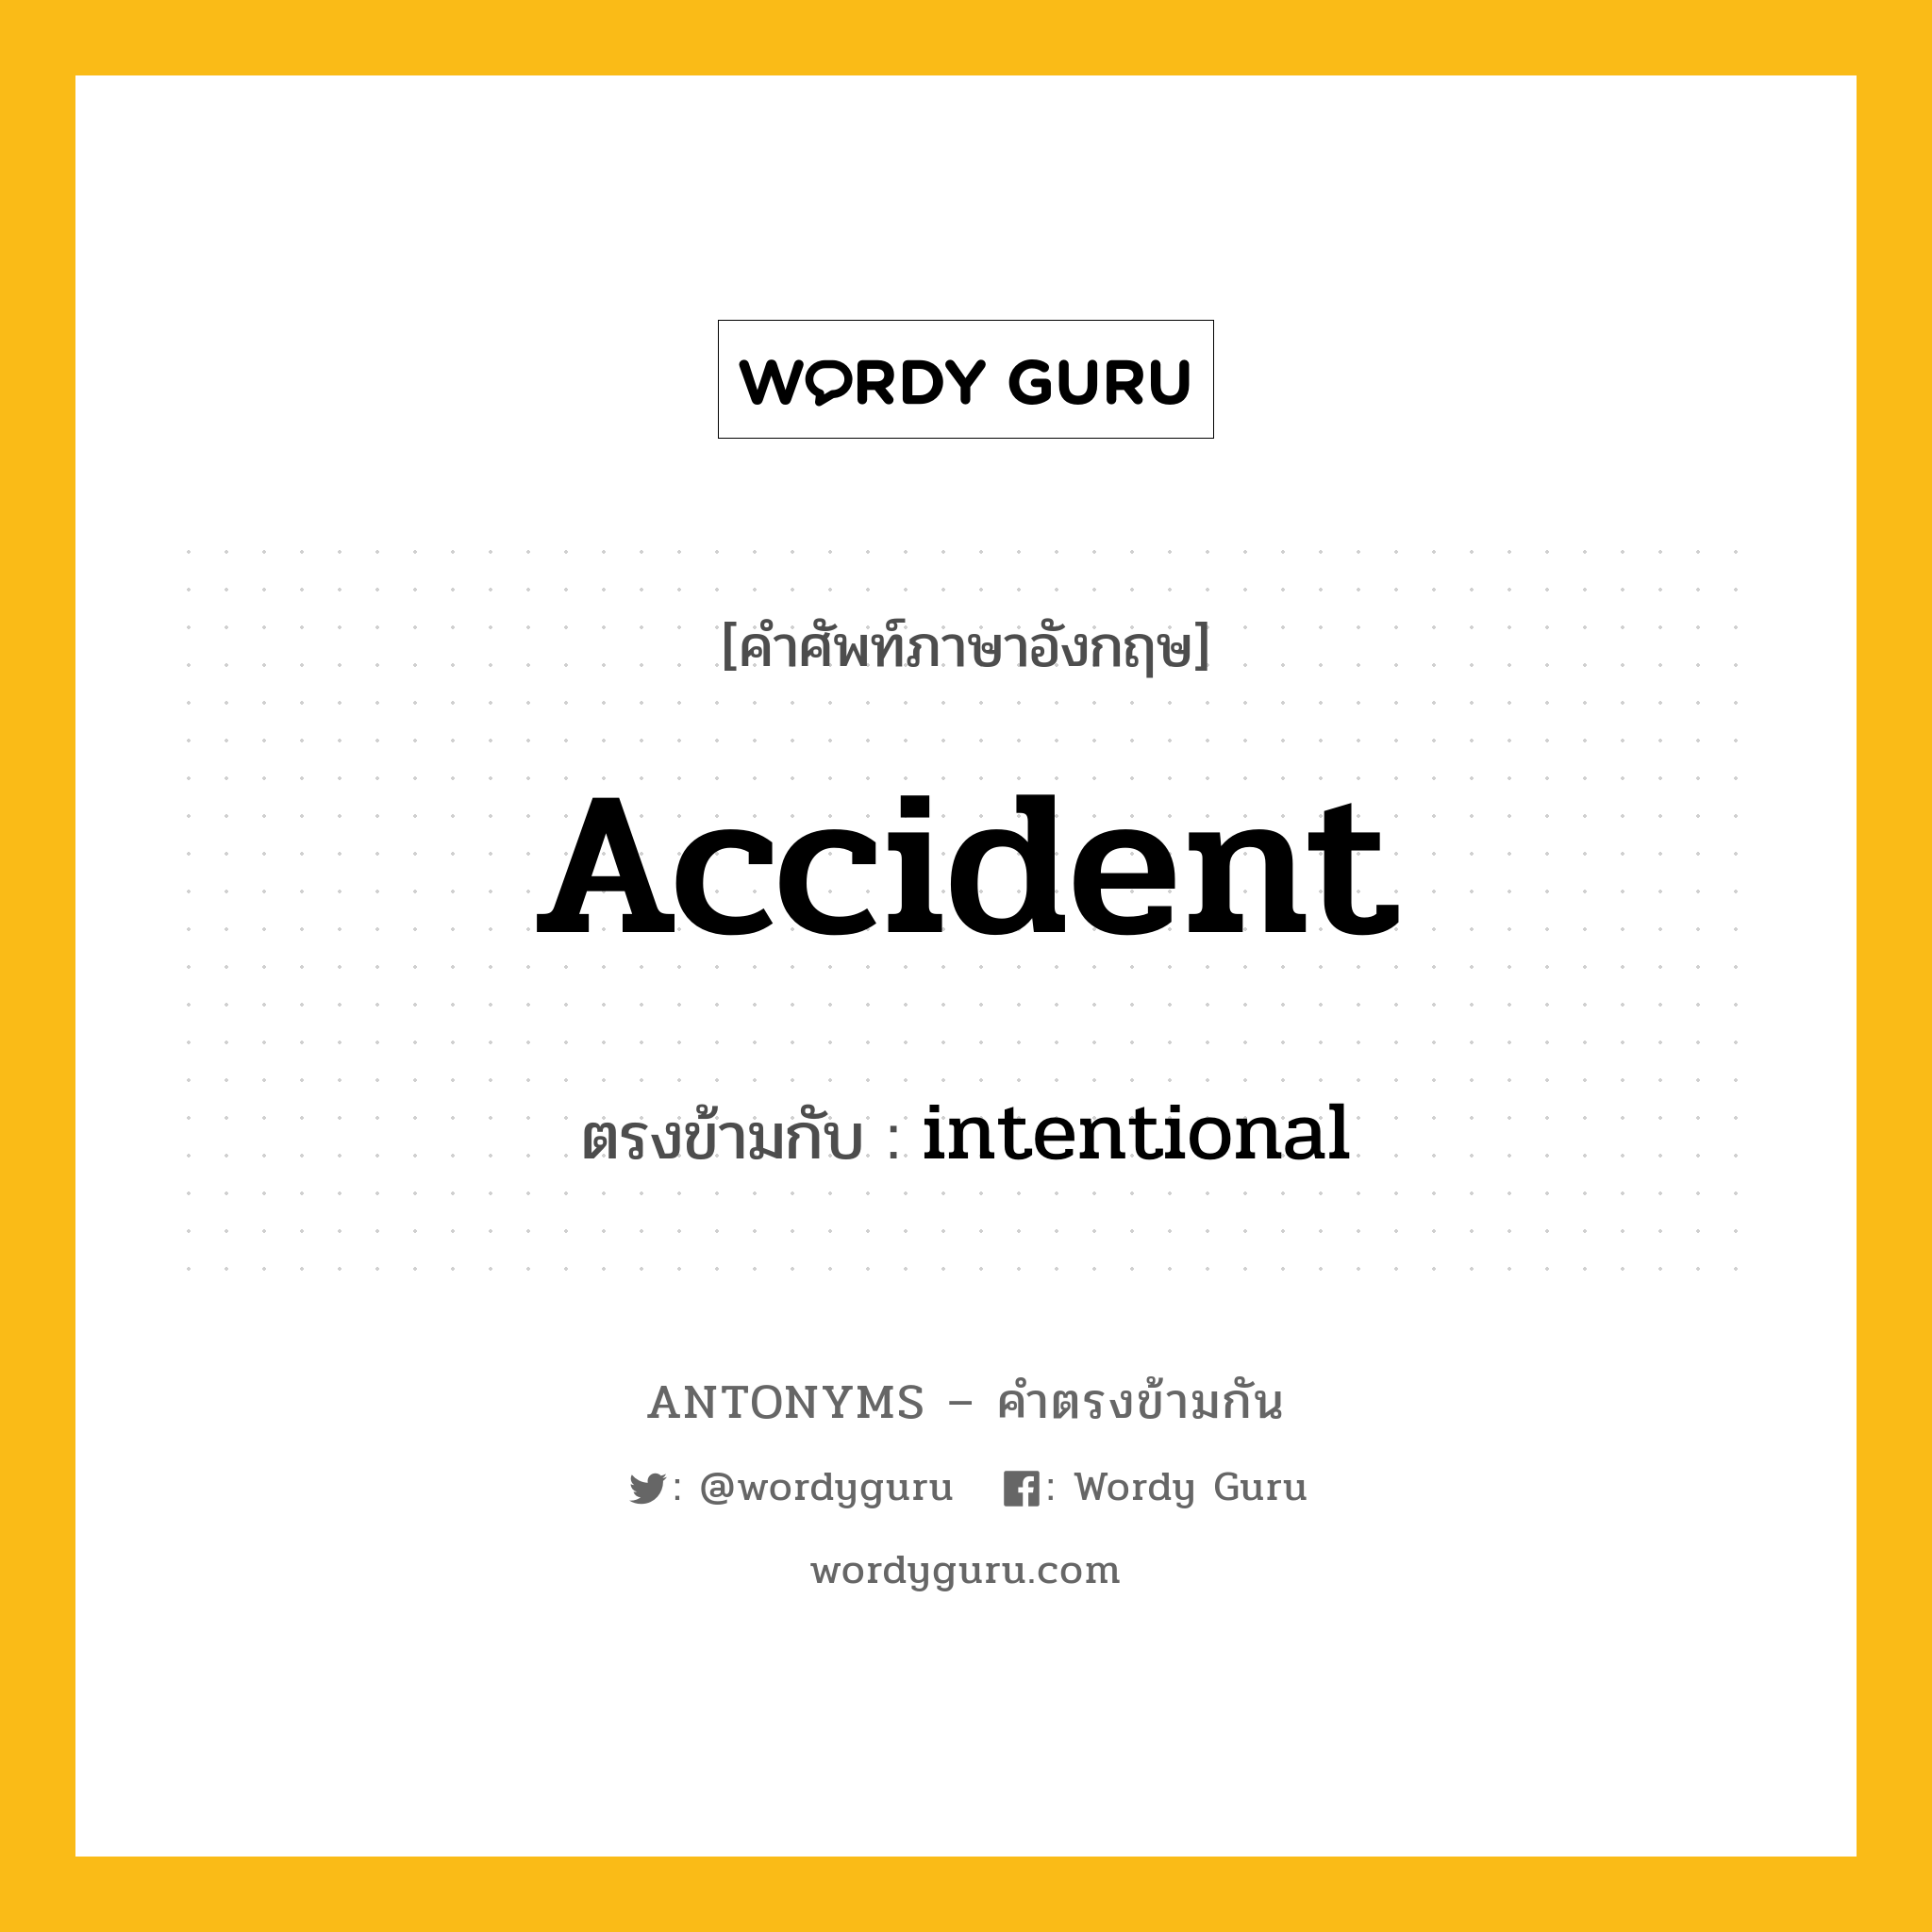 accident เป็นคำตรงข้ามกับคำไหนบ้าง?, คำศัพท์ภาษาอังกฤษ accident ตรงข้ามกับ intentional หมวด intentional